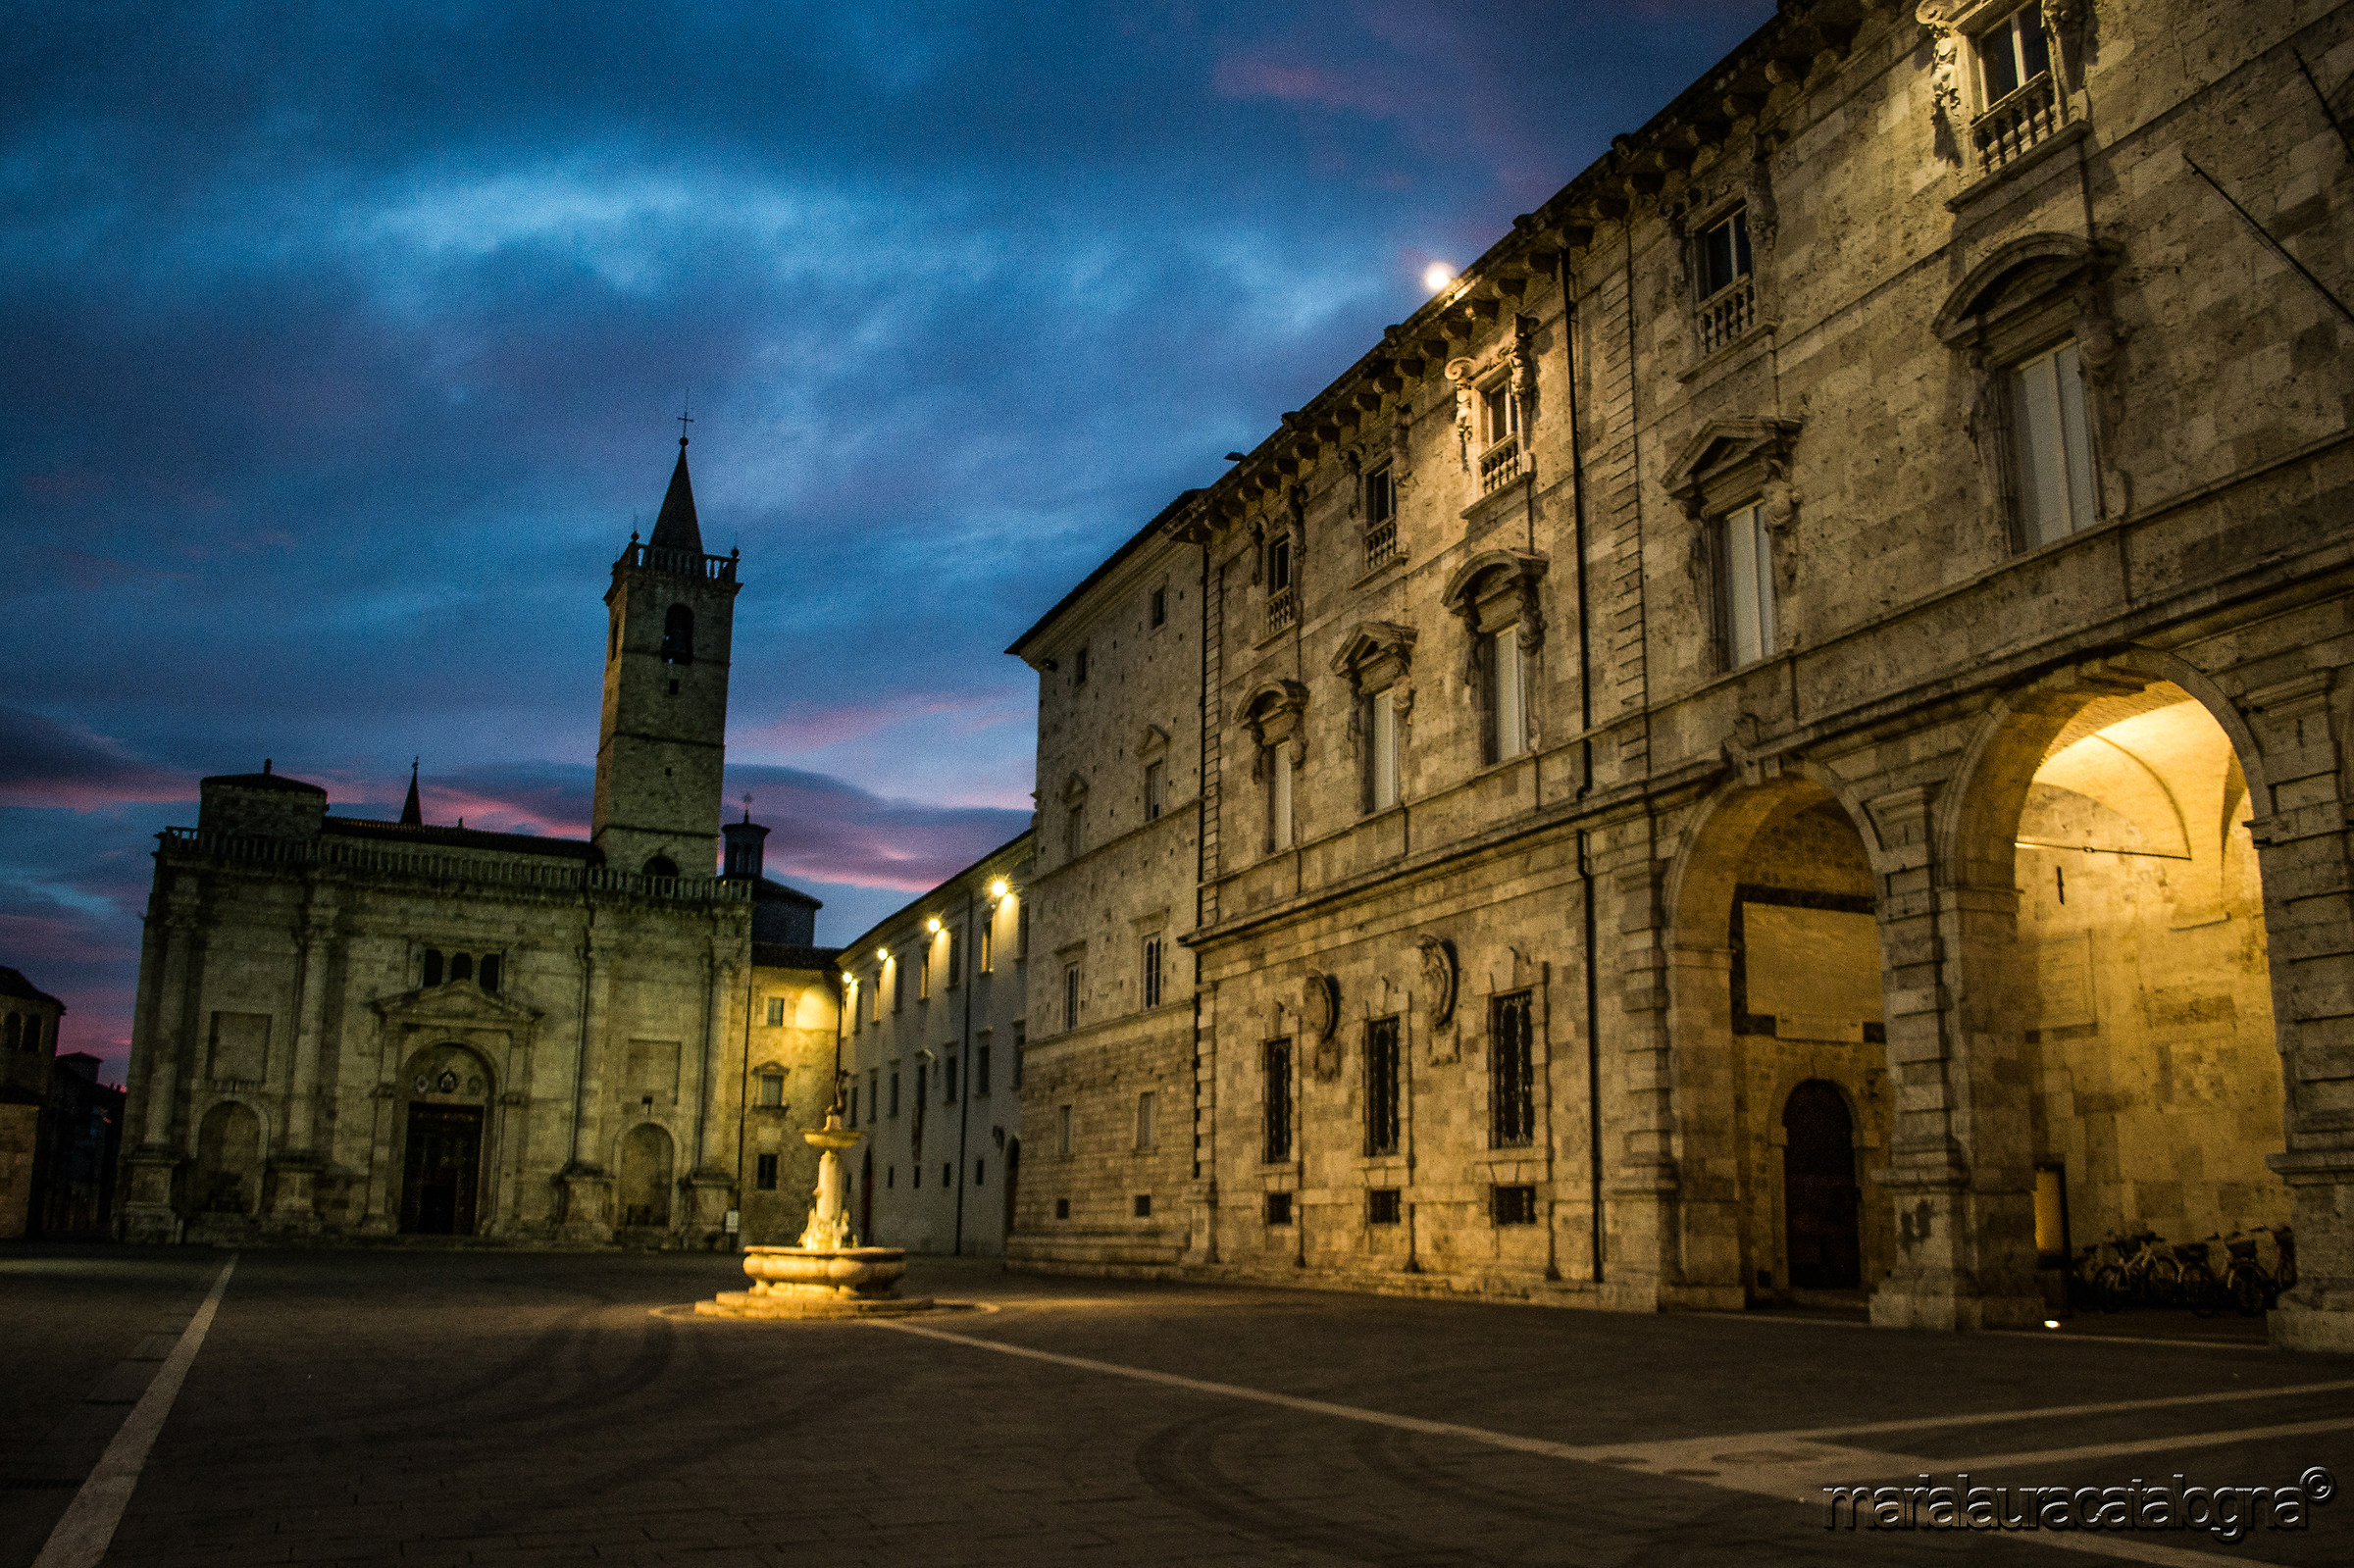 Ascoli Piceno dawn...